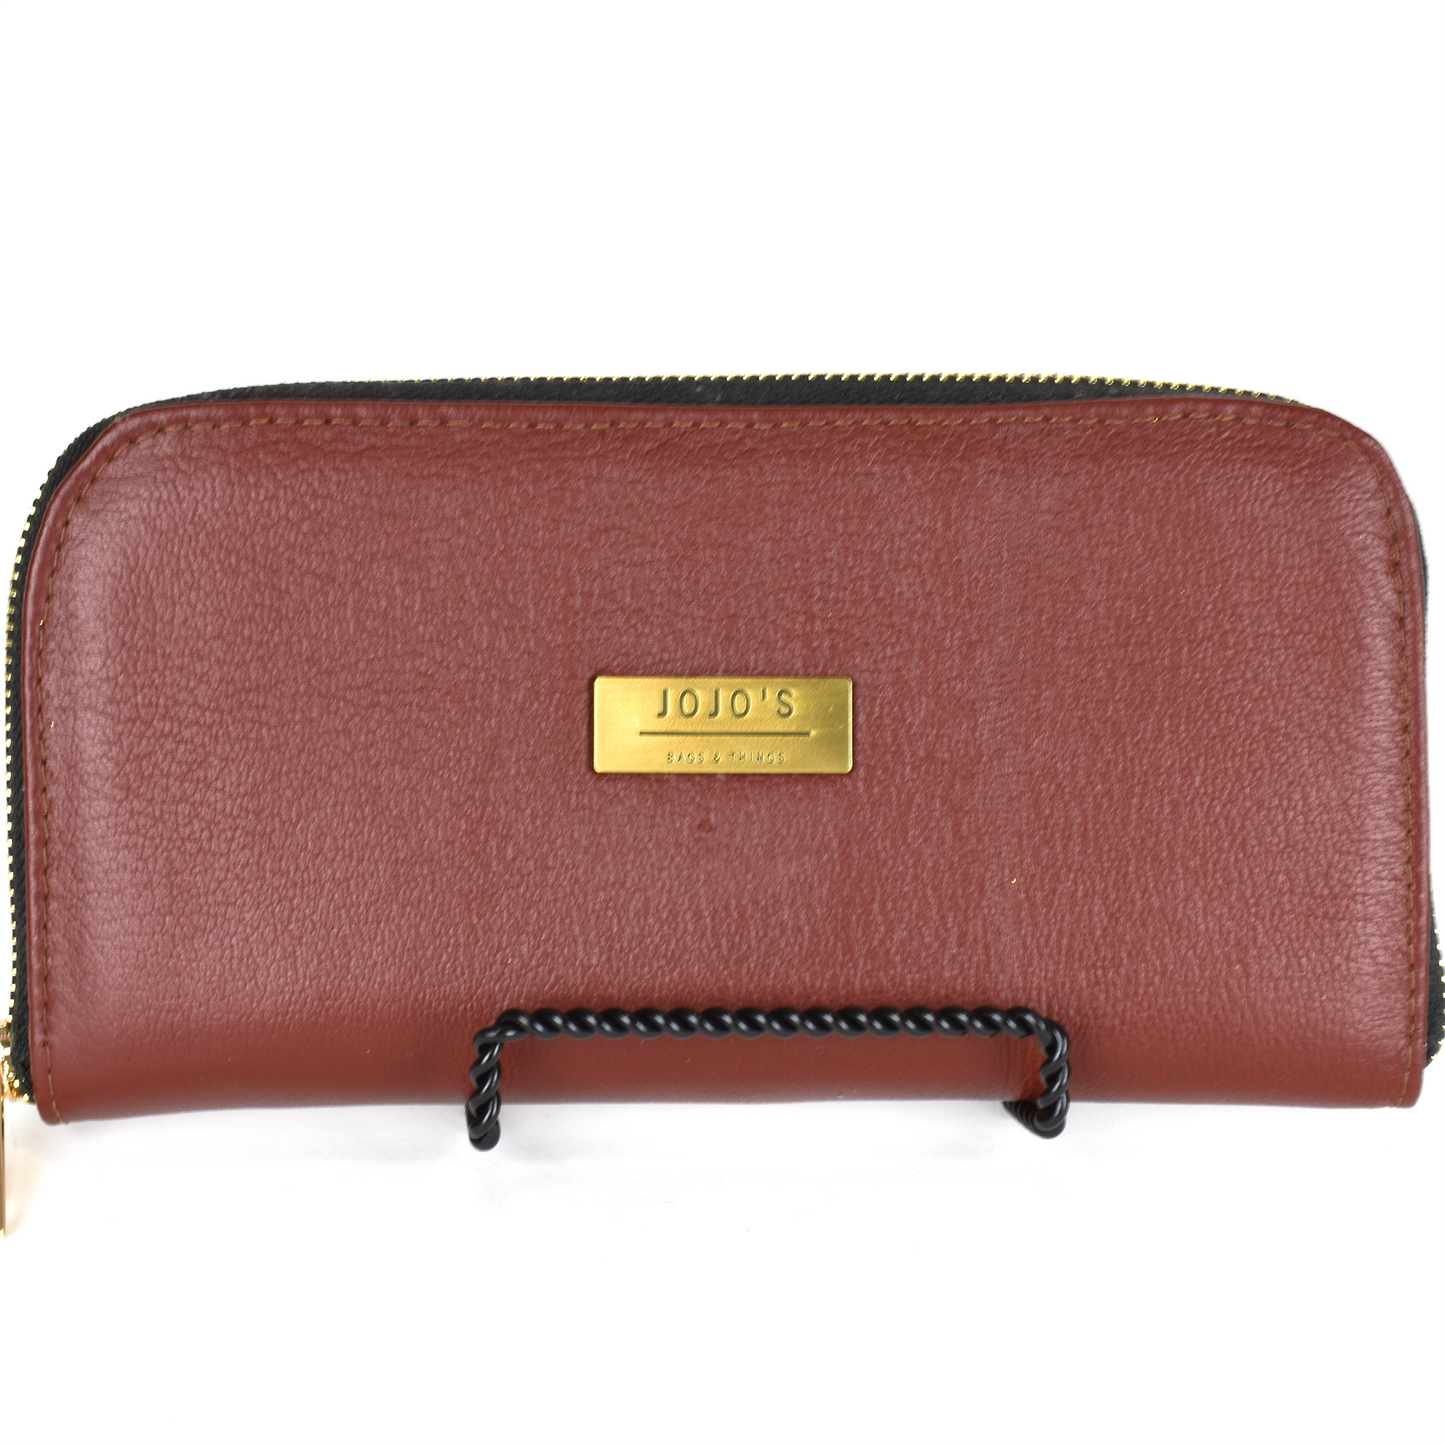 Women's zippered wallet